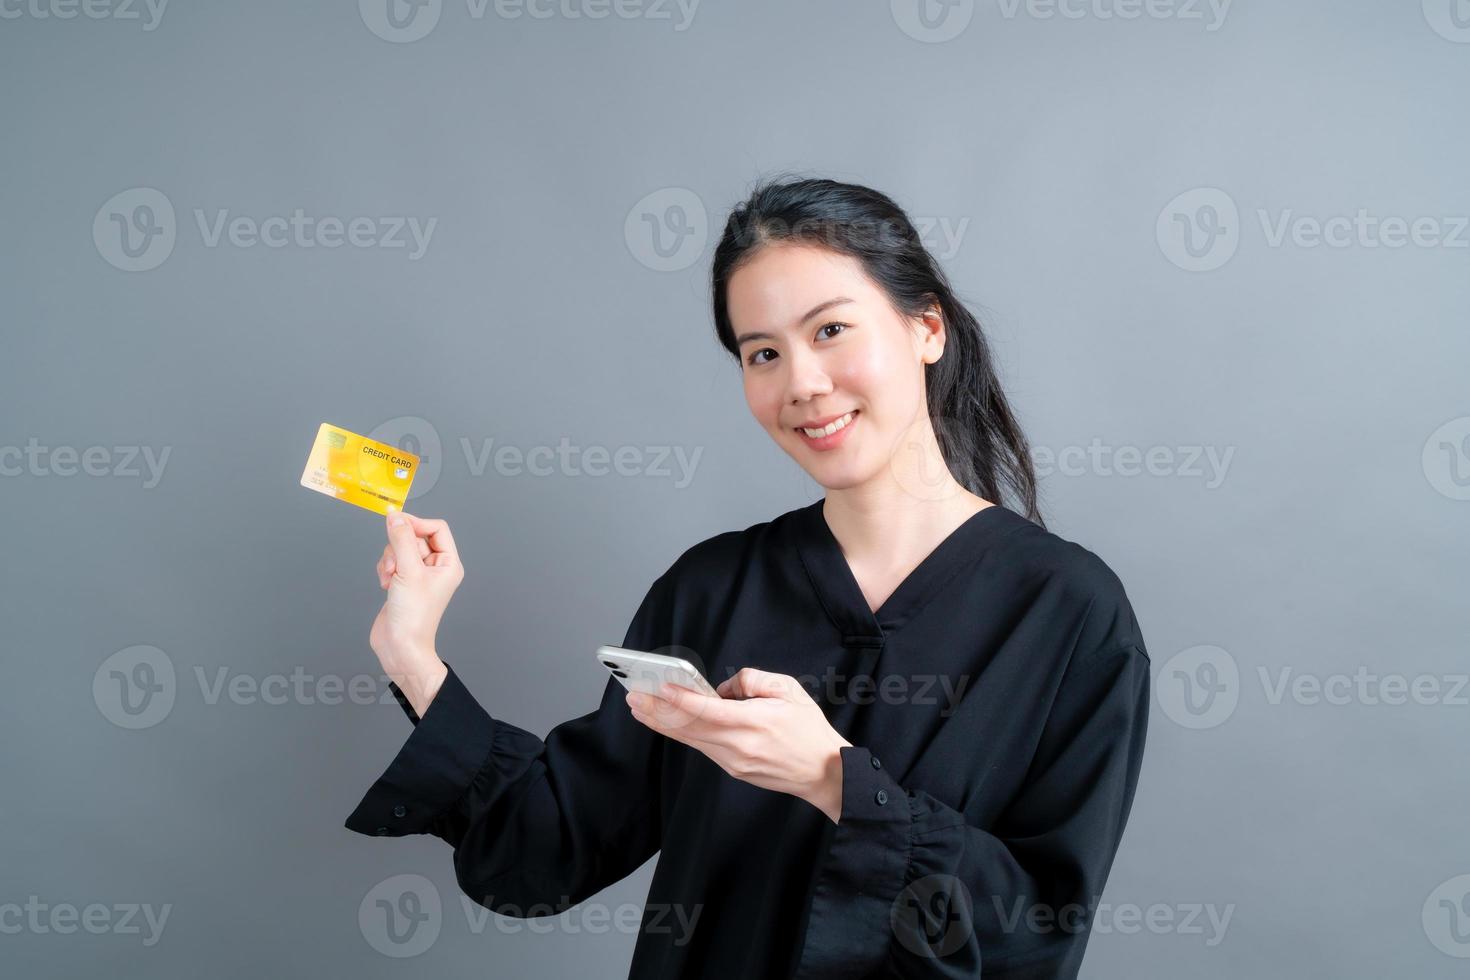 Retrato de una joven asiática feliz mostrando una tarjeta de crédito de plástico mientras sostiene el teléfono móvil sobre fondo gris foto